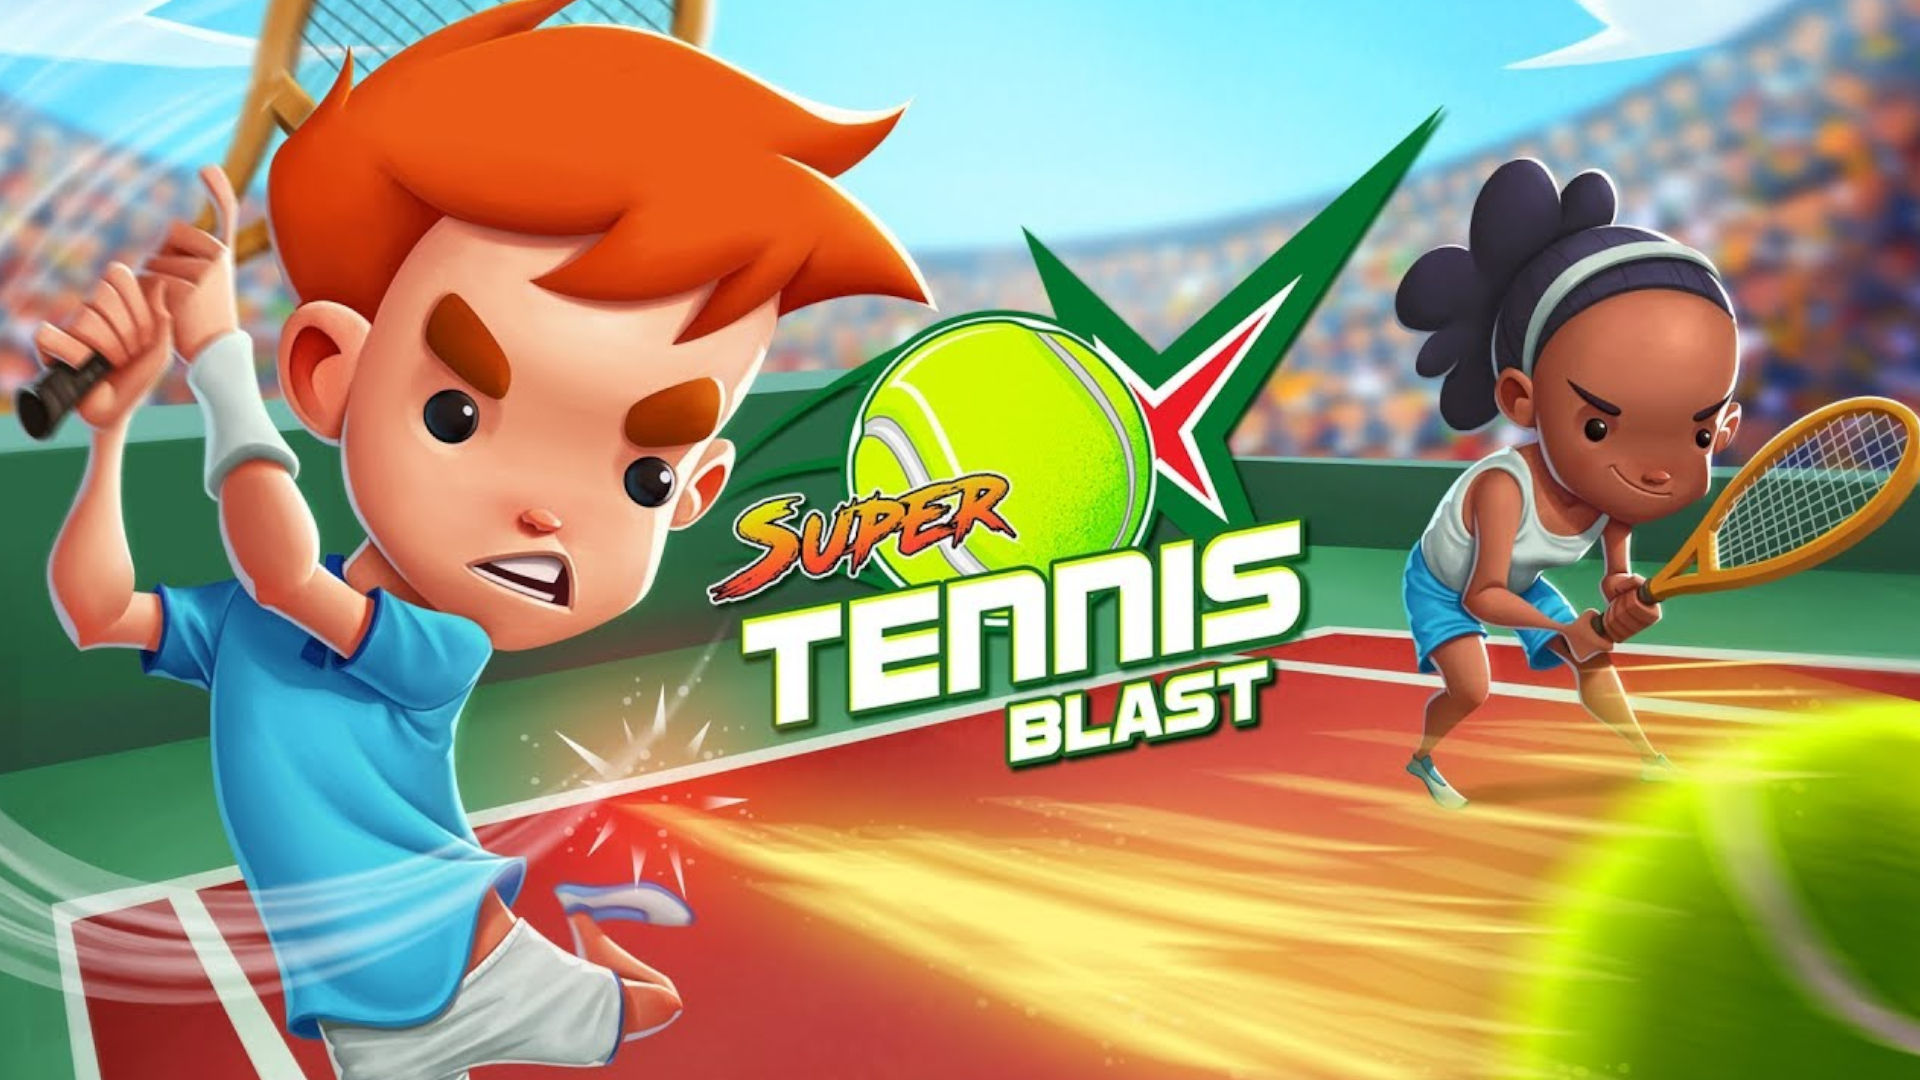 Switch アーケード テニス ゲームの 1 つである Super Tennis Blast のキーアート